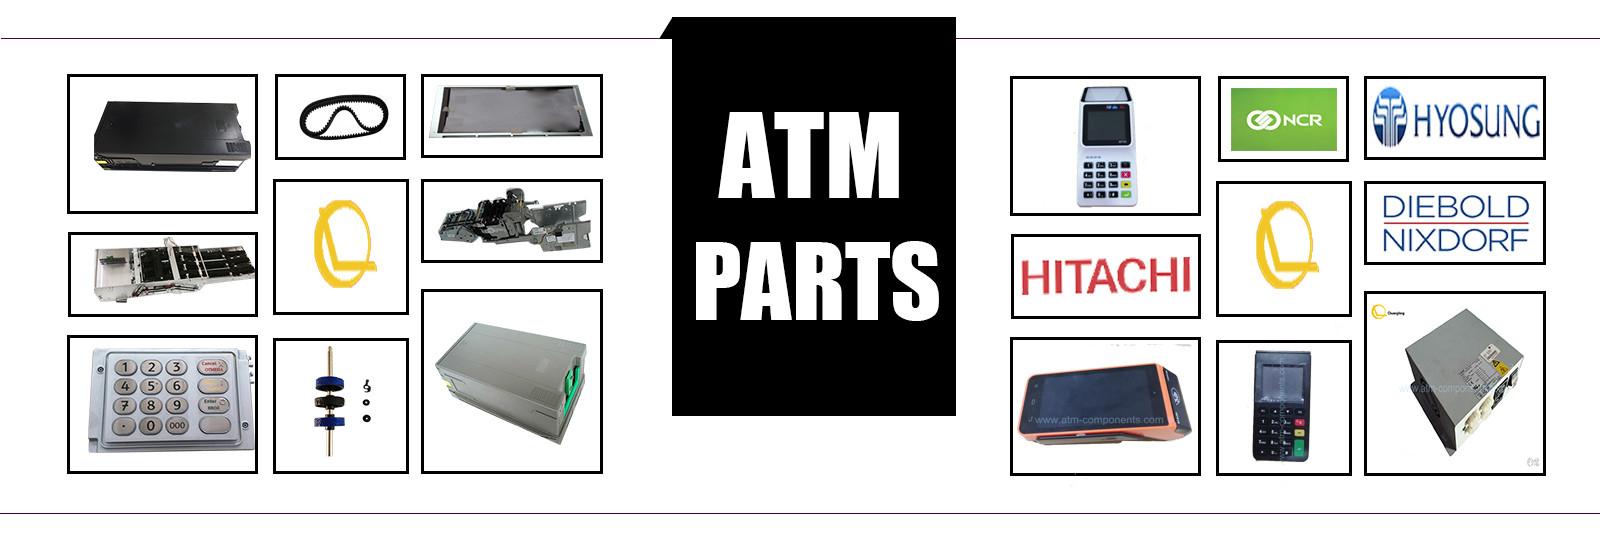 کیفیت EPP ATM Keyboard کارخانه